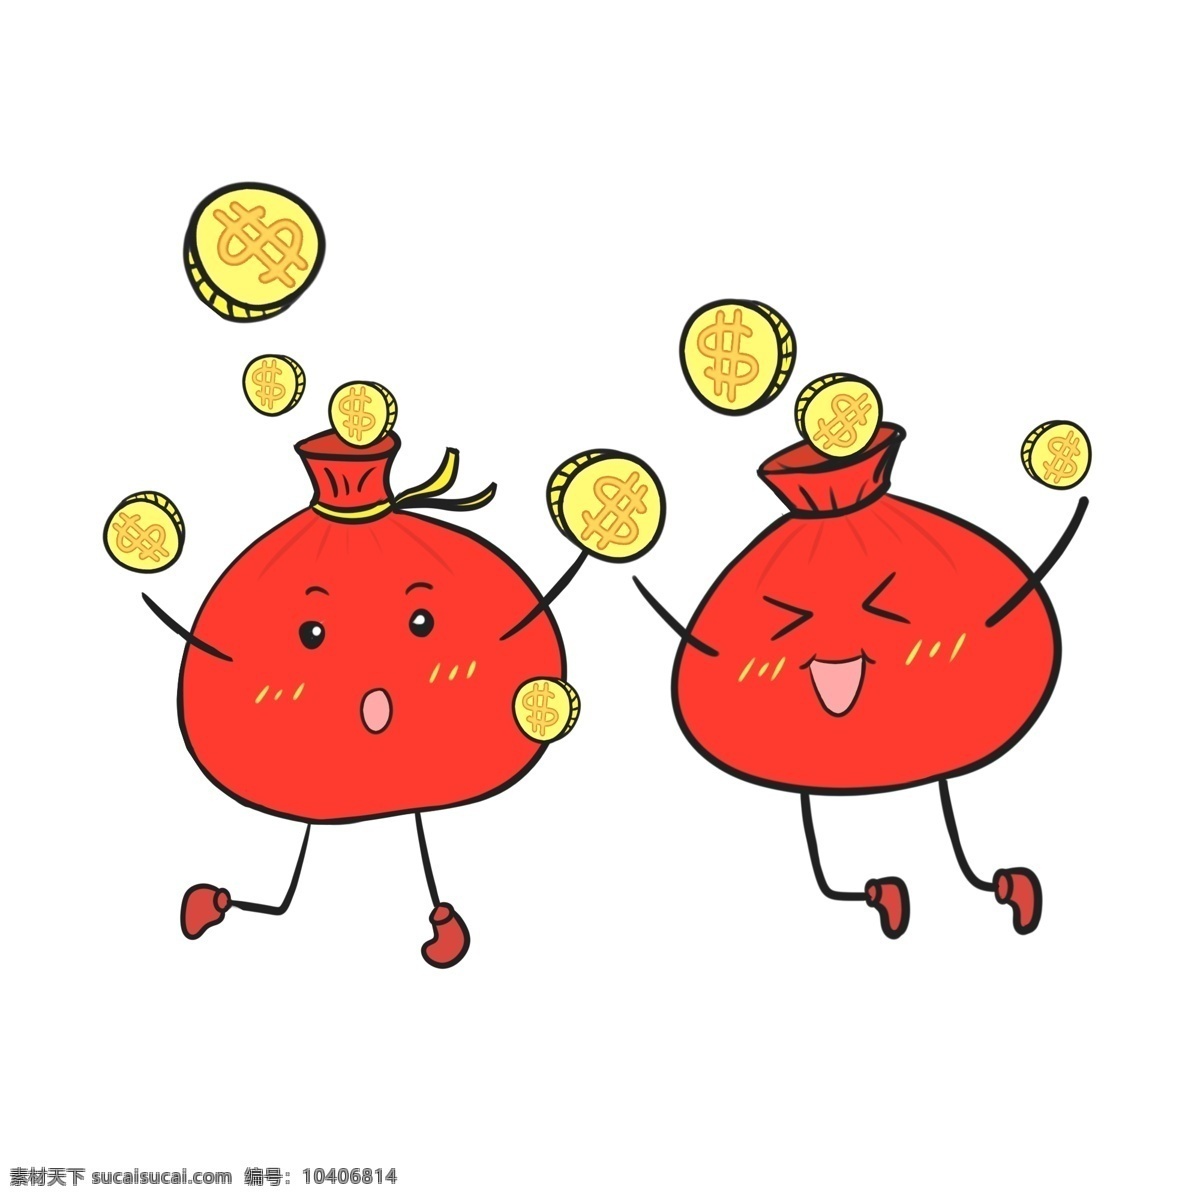 手绘 新年 钱袋 插画 红色的红包 鼓鼓的红包 金色的钱币 卡通插画 红色的钱袋 手绘红包插画